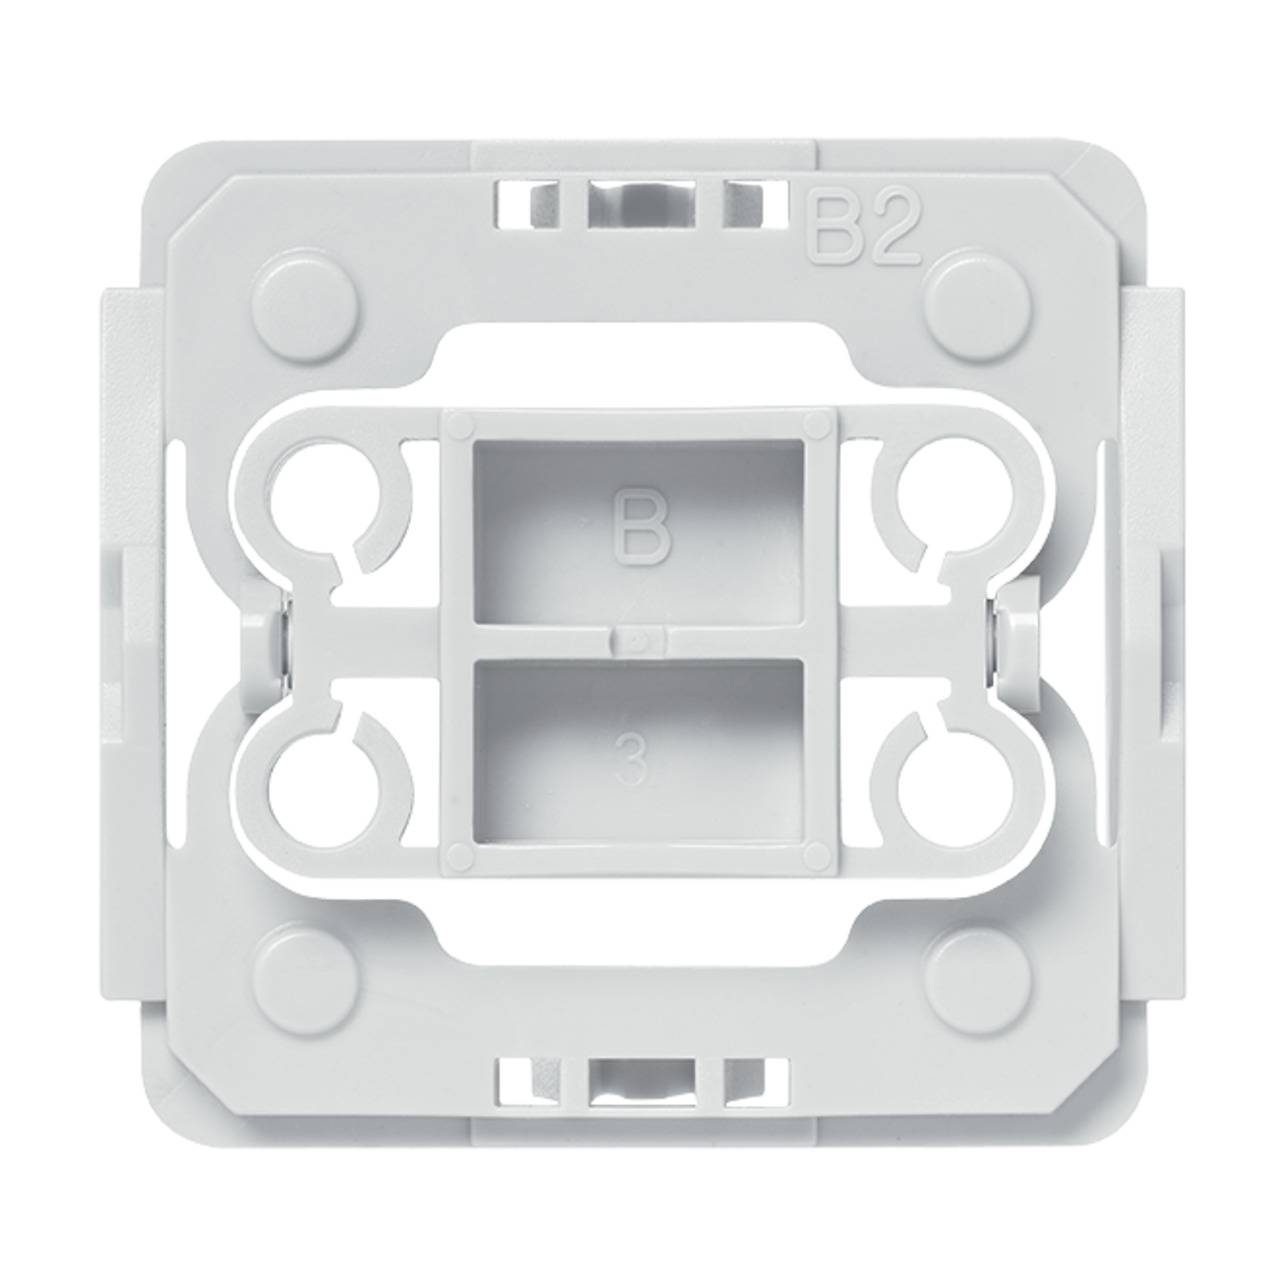 Installationsadapter für Berker-Schalter- 1 Stück- für Smart Home - Hausautomation